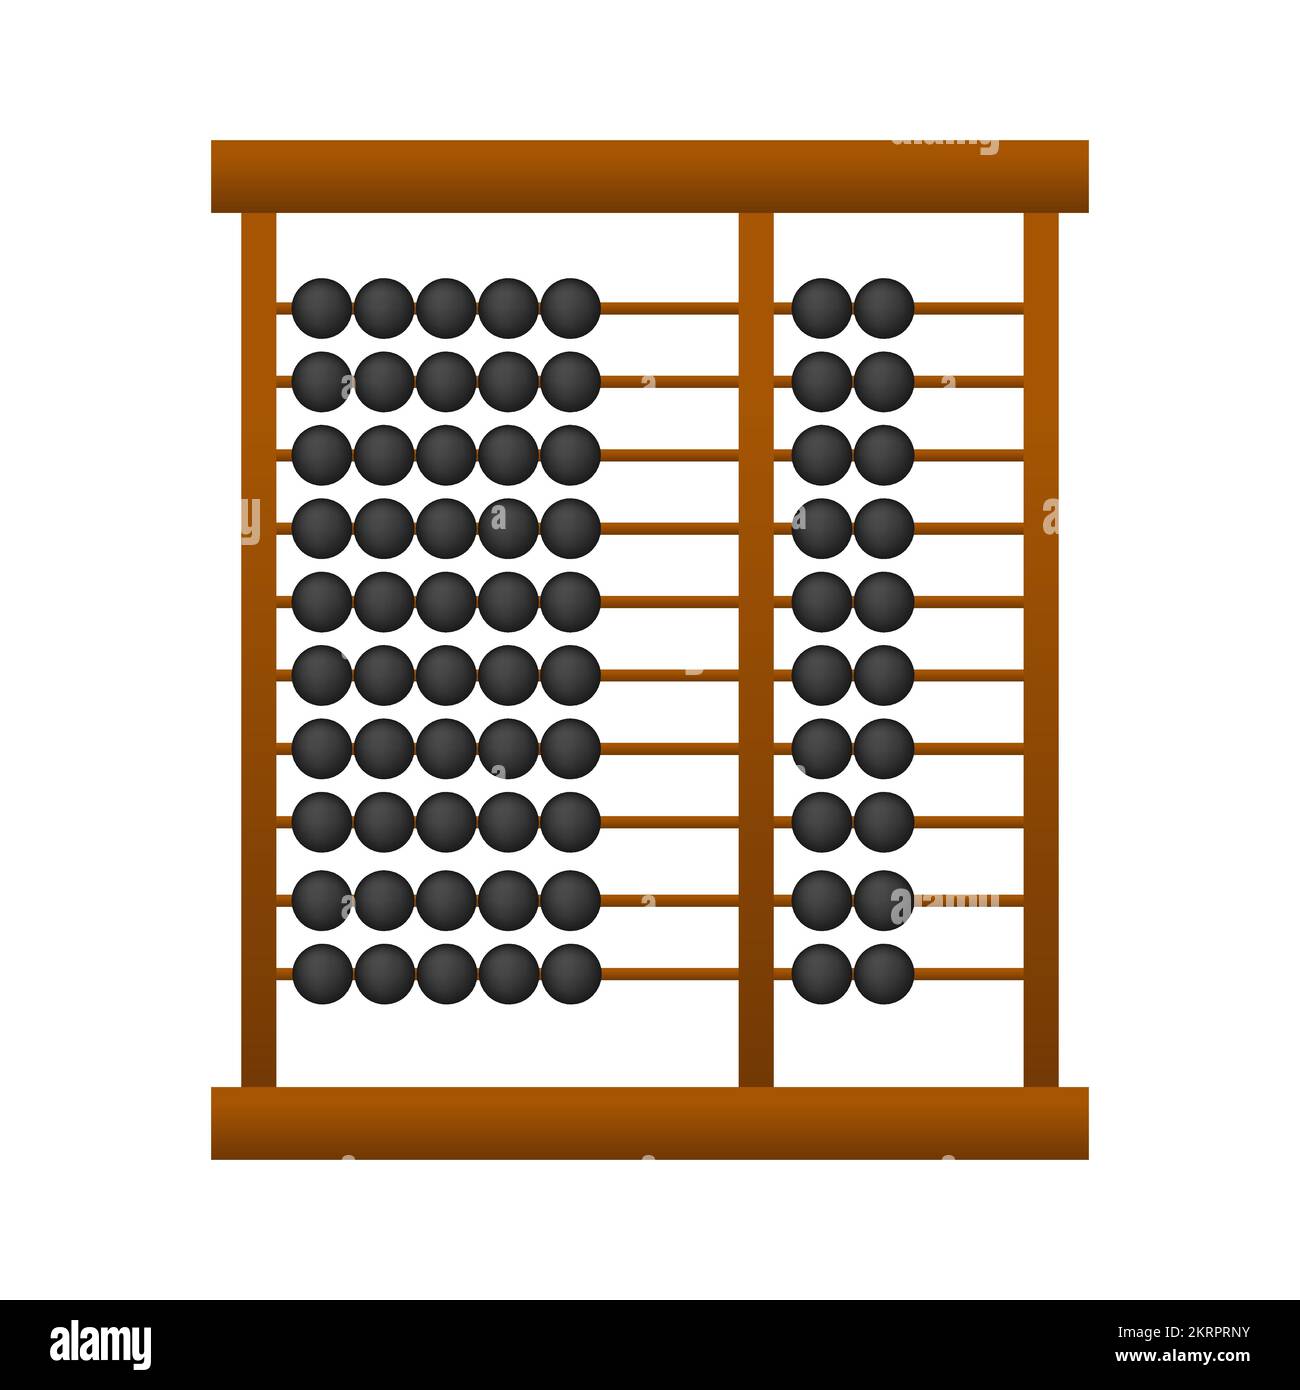 Icône Abacus en bois. Outil de calcul. Illustration du stock vectoriel  Image Vectorielle Stock - Alamy